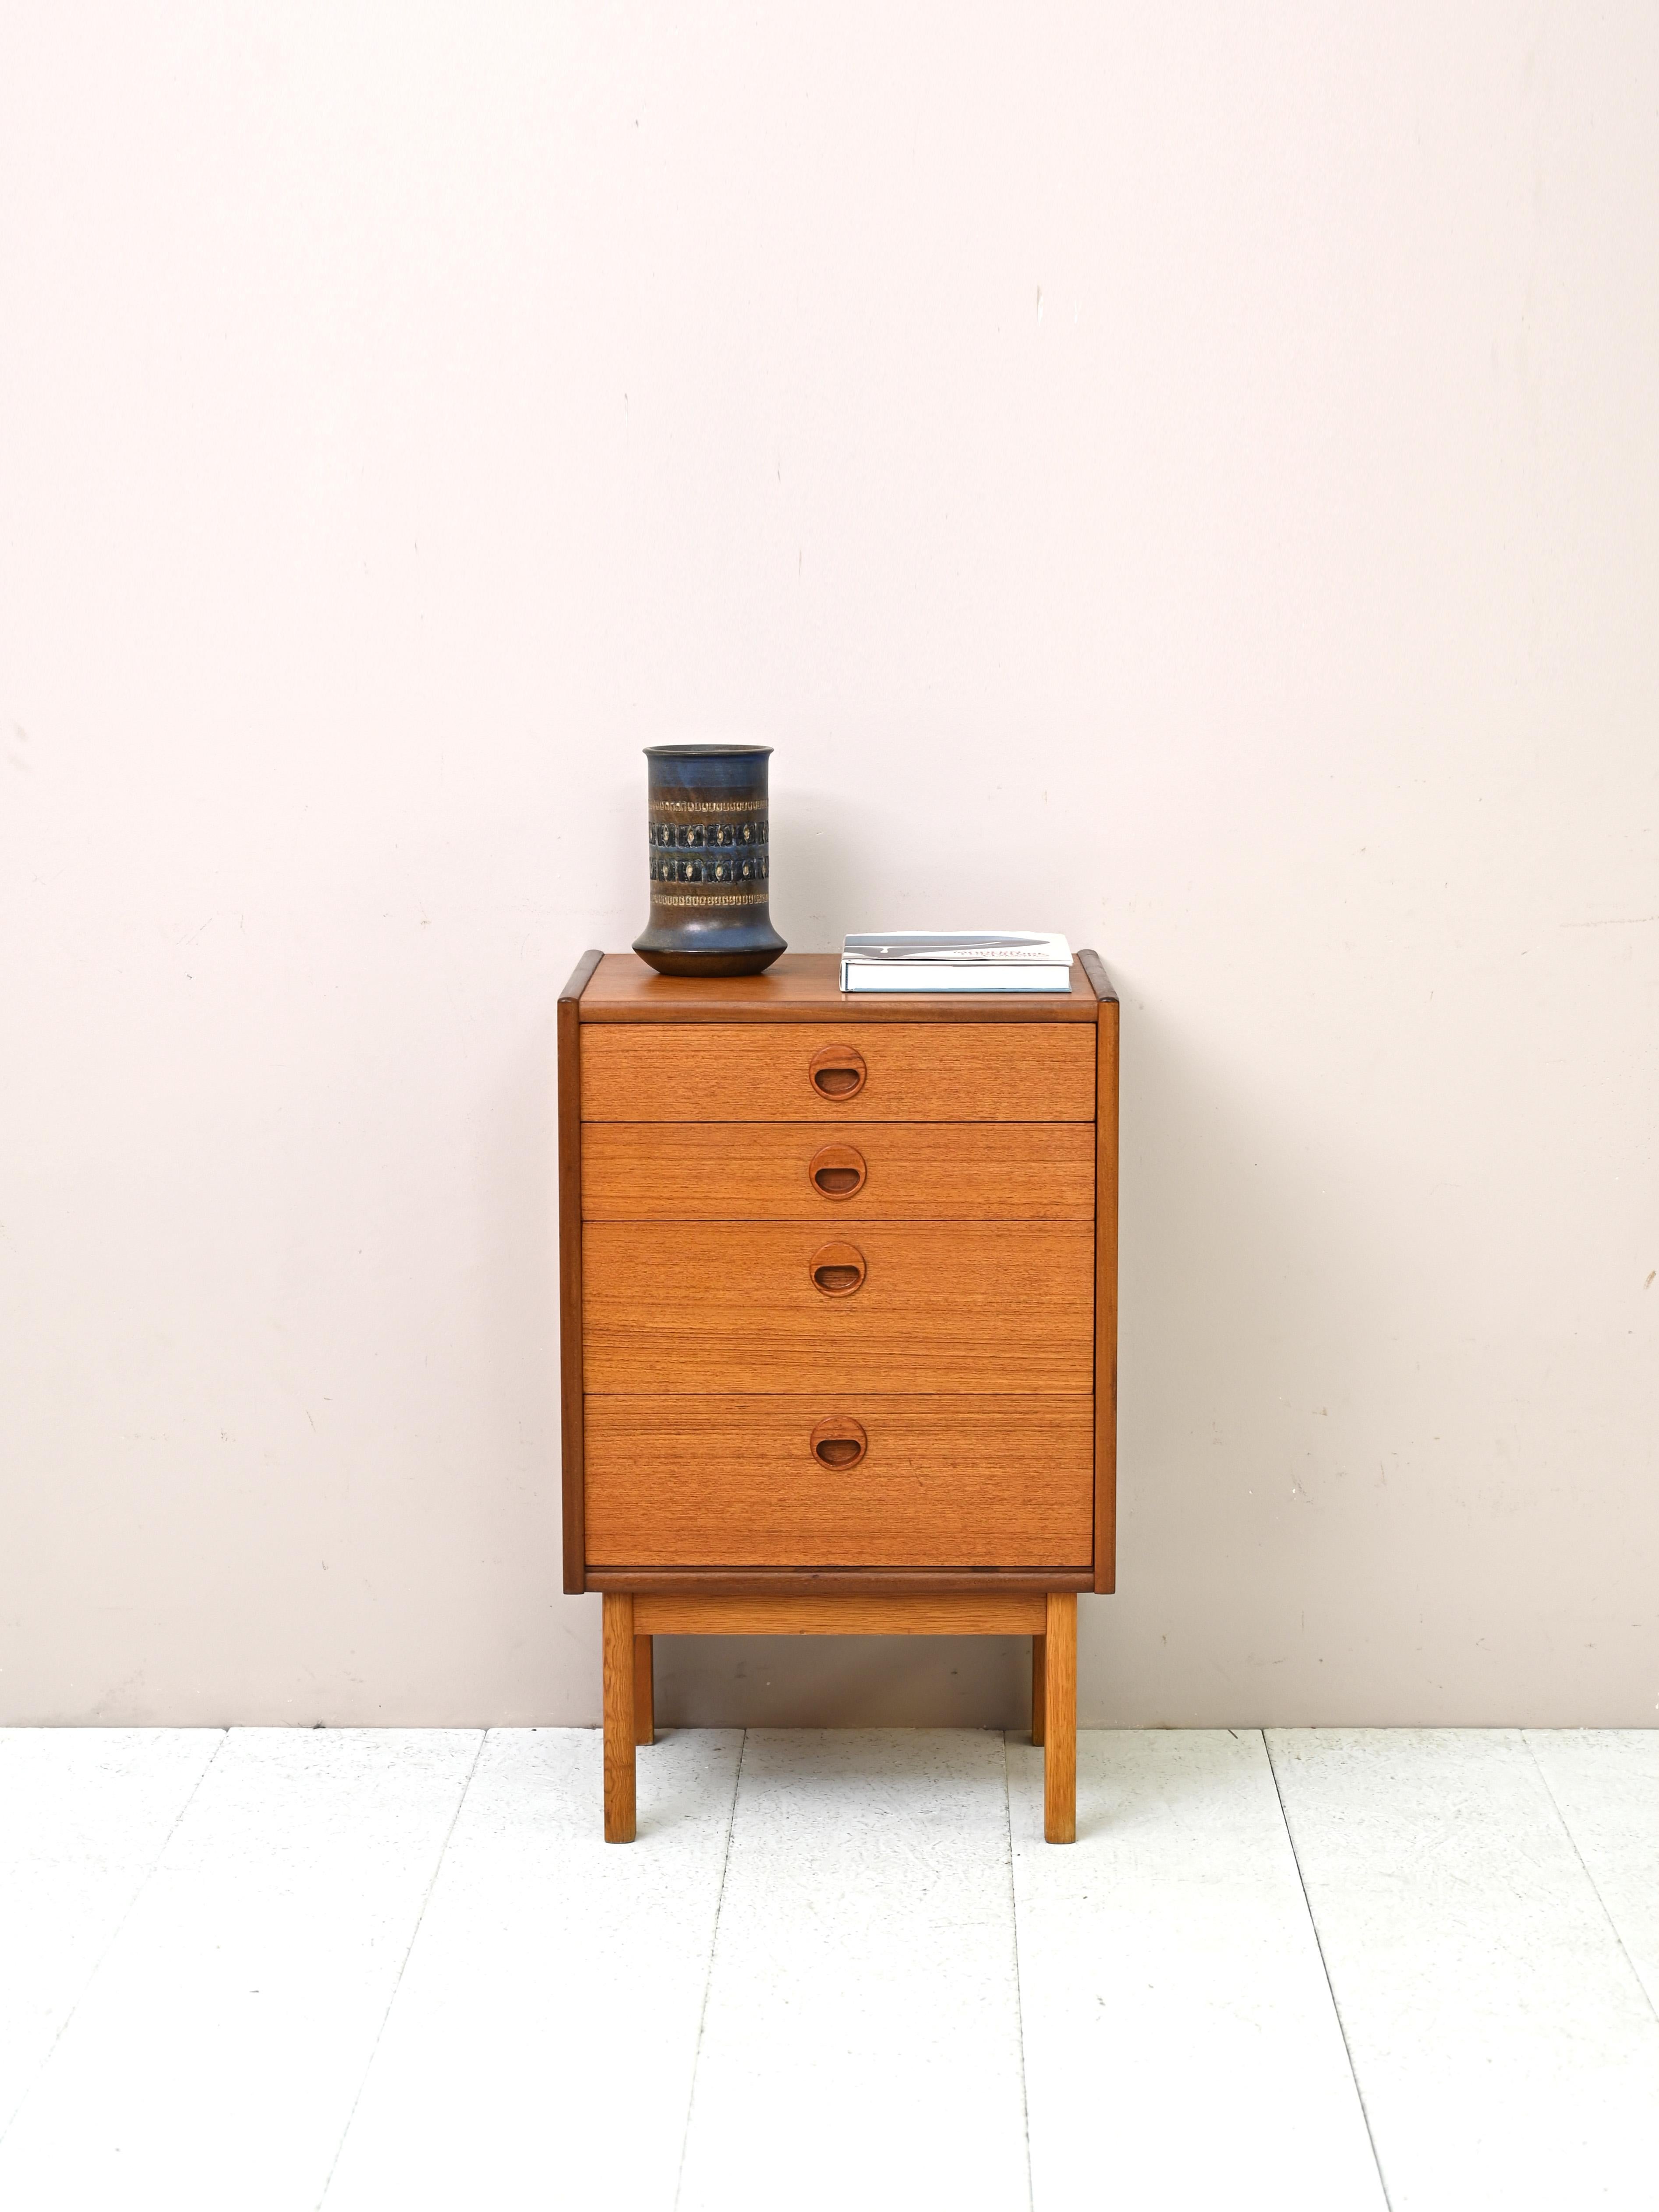 Modernistische Kommode, hergestellt in Skandinavien in den 1960er Jahren.
Dieses schlichte und kompakte Möbelstück im nordischen Design verfügt über vier Schubladen mit einem aus Holz geschnitzten Griff.
Ideal als Nachttisch oder Ablage für den